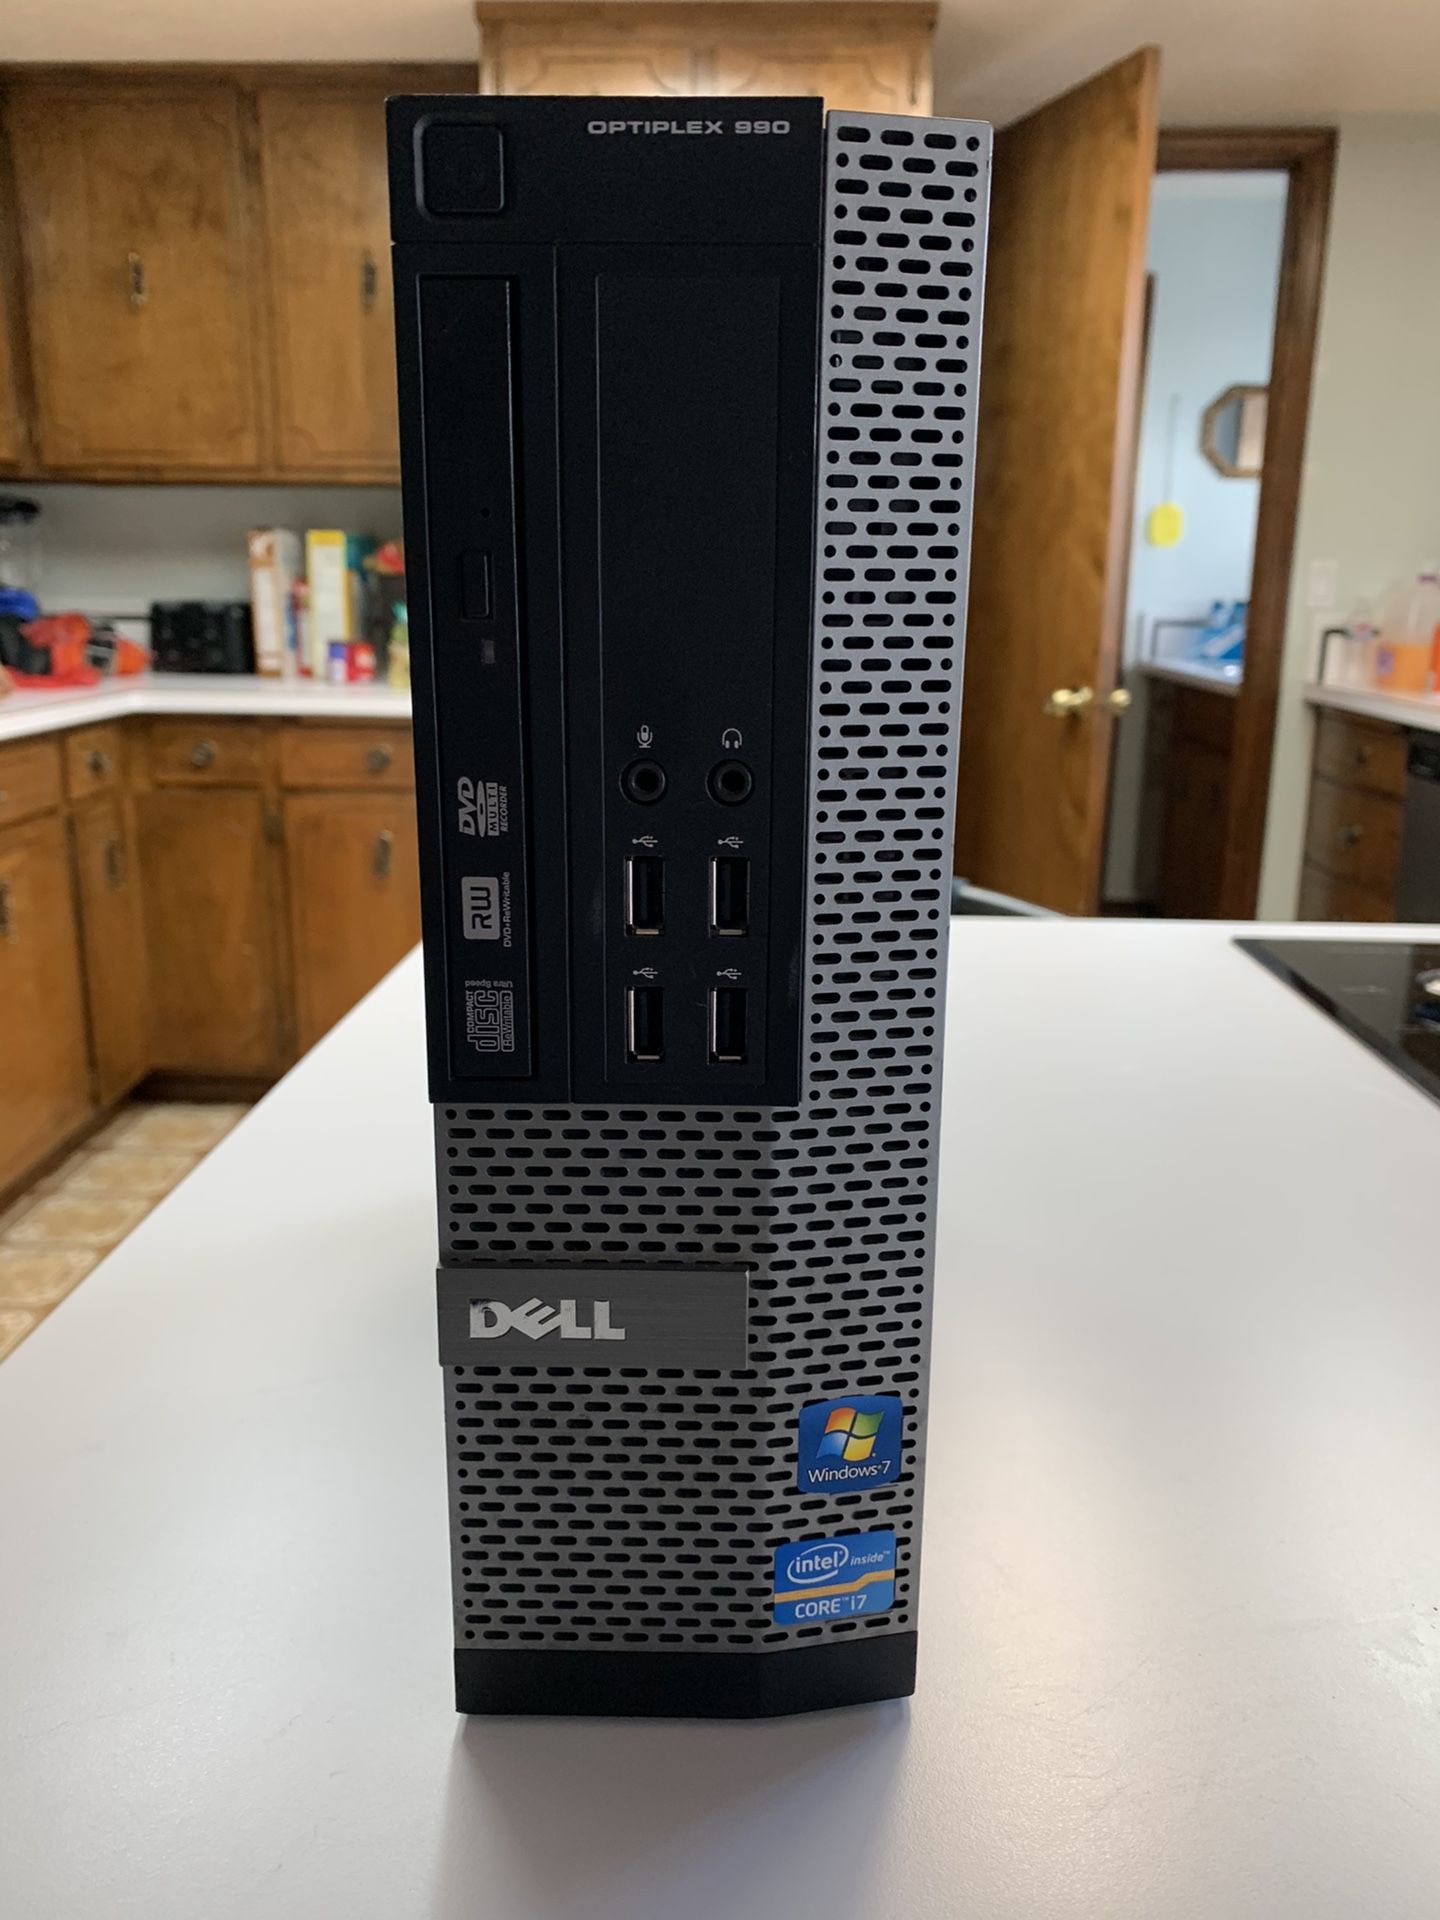 Dell optiplex 990 mini desktop i7